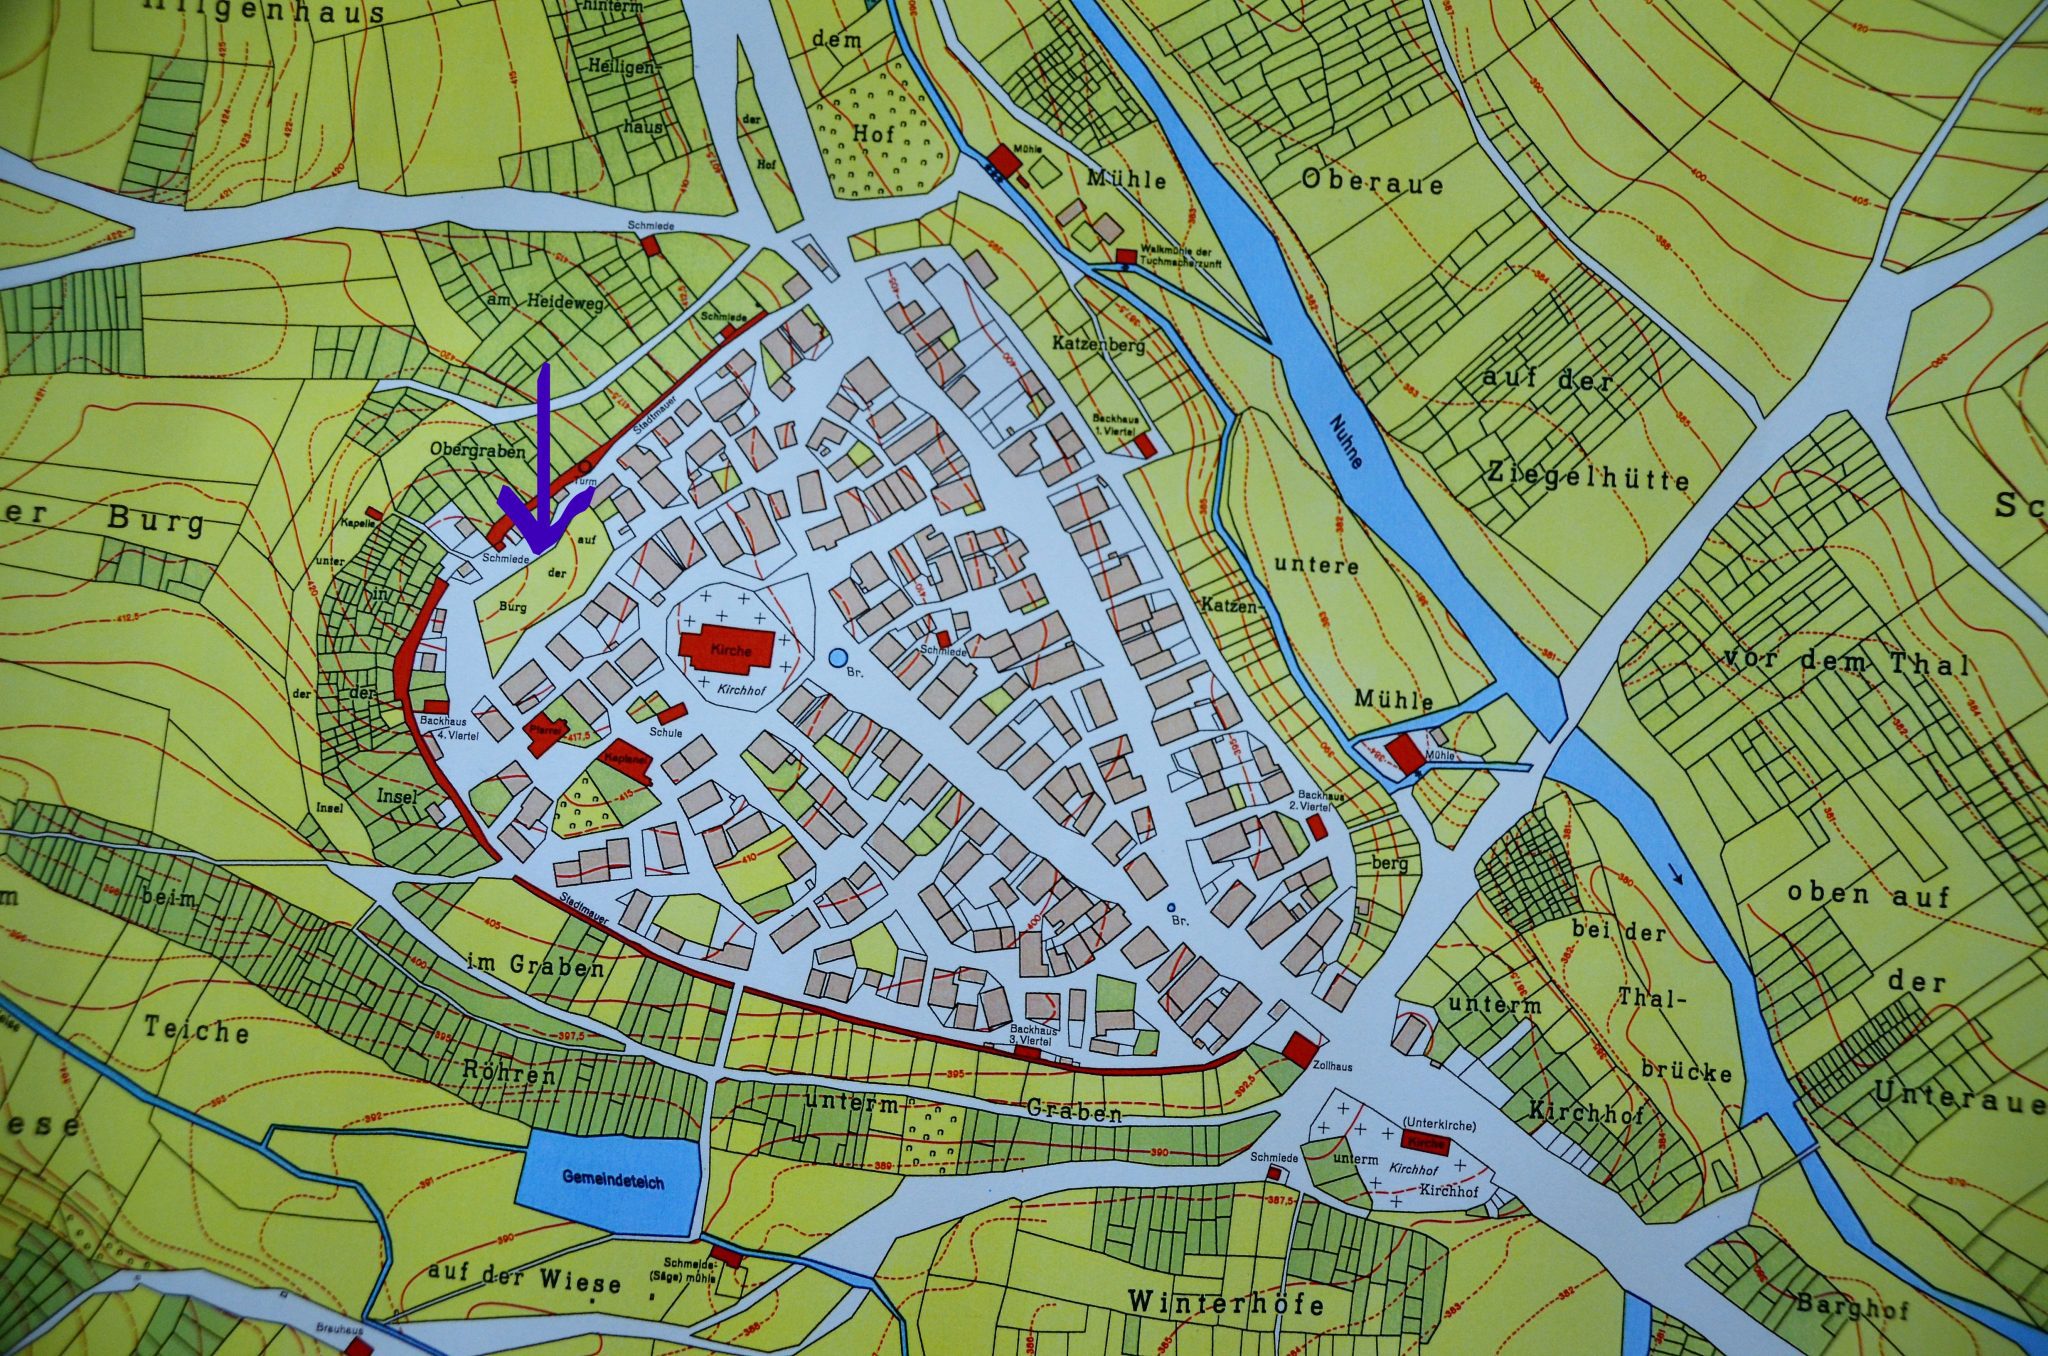 Mauerreste und Scherben aus dem 13. Jahrhundert in Hallenberg gefunden - region, region-wi-me-ha, hallenberg